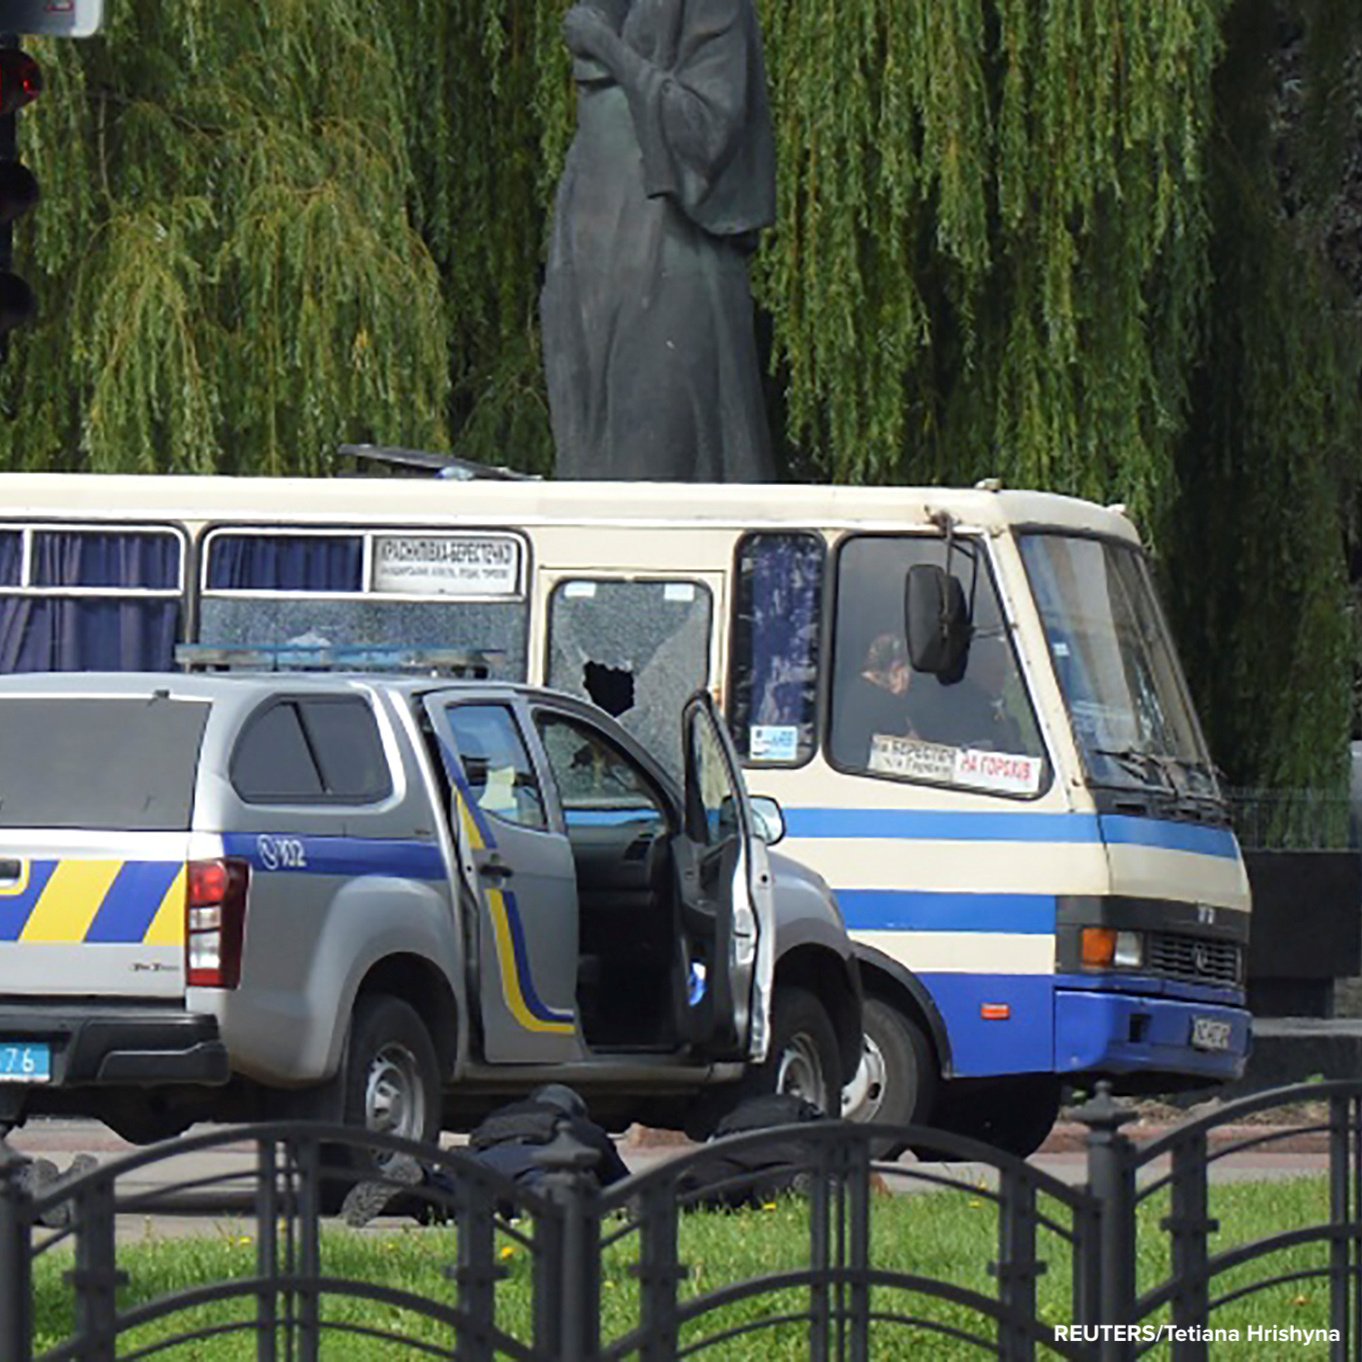 Autoridades negocian con el terrorista que tiene secuestrado a un bus con 20 pasajeros. Foto: @LPLdirect